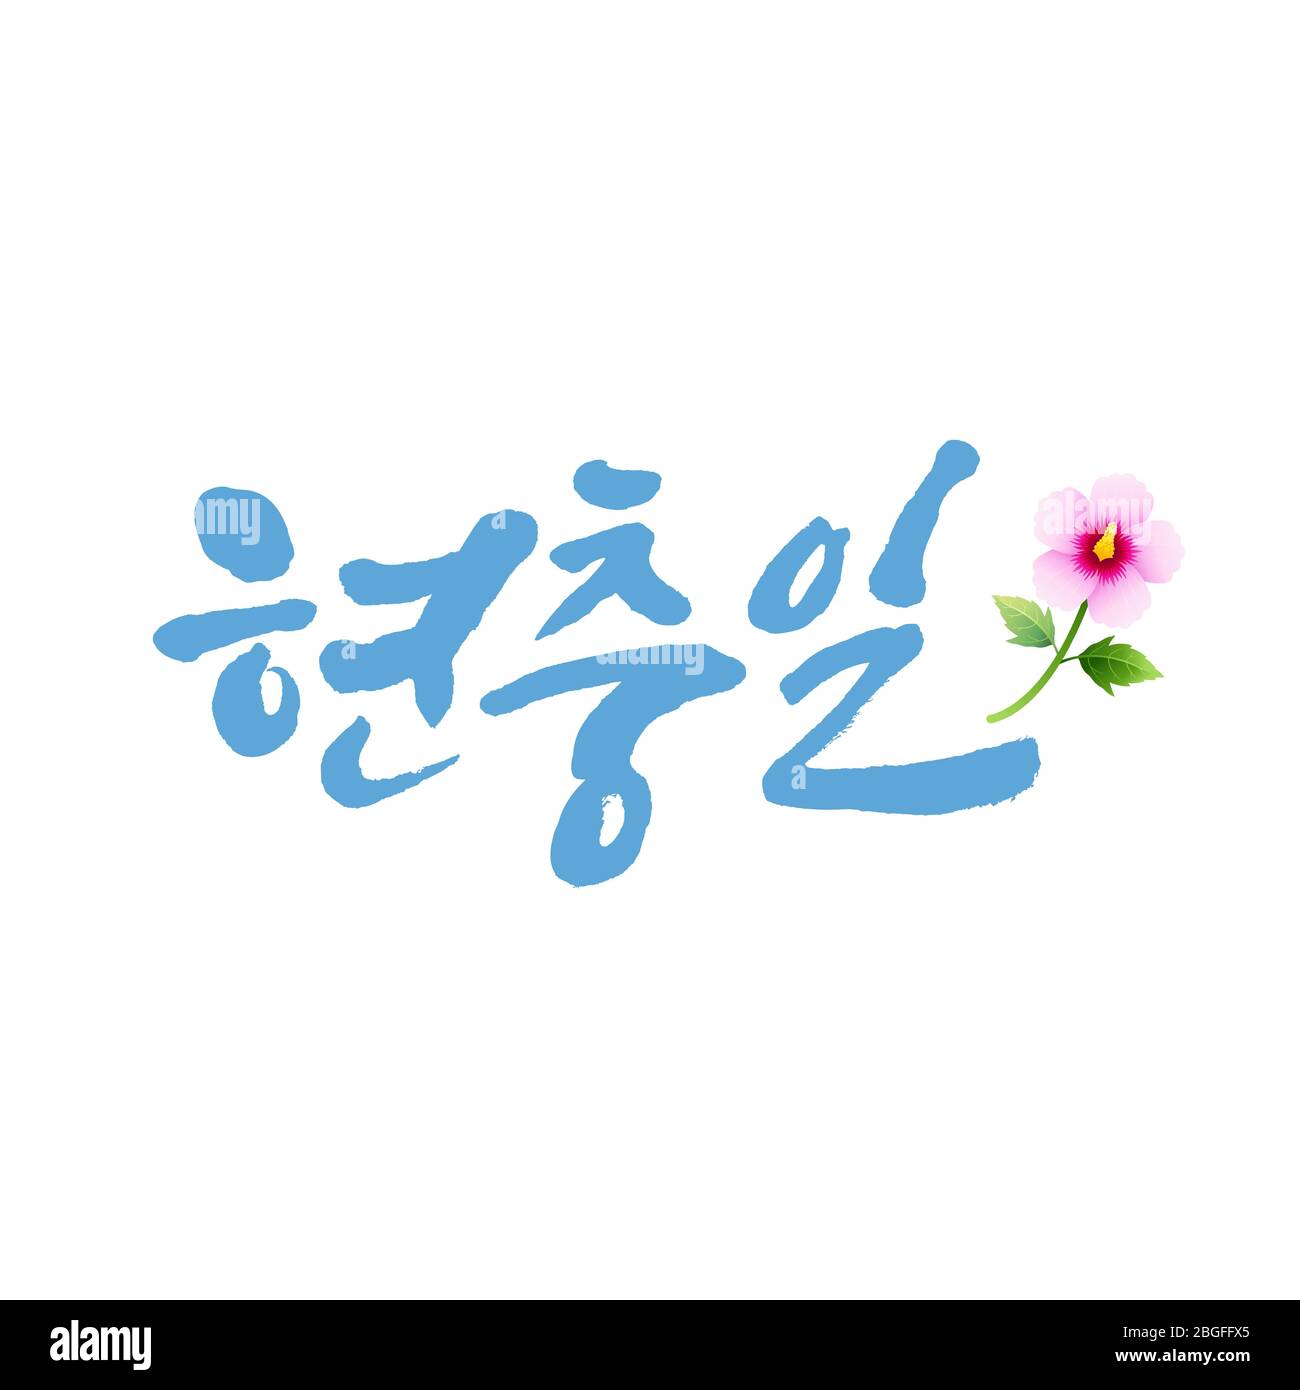 Motif emblème du jour commémoratif et calligraphie. Memorial Day, traduction en coréen. Illustration de Vecteur